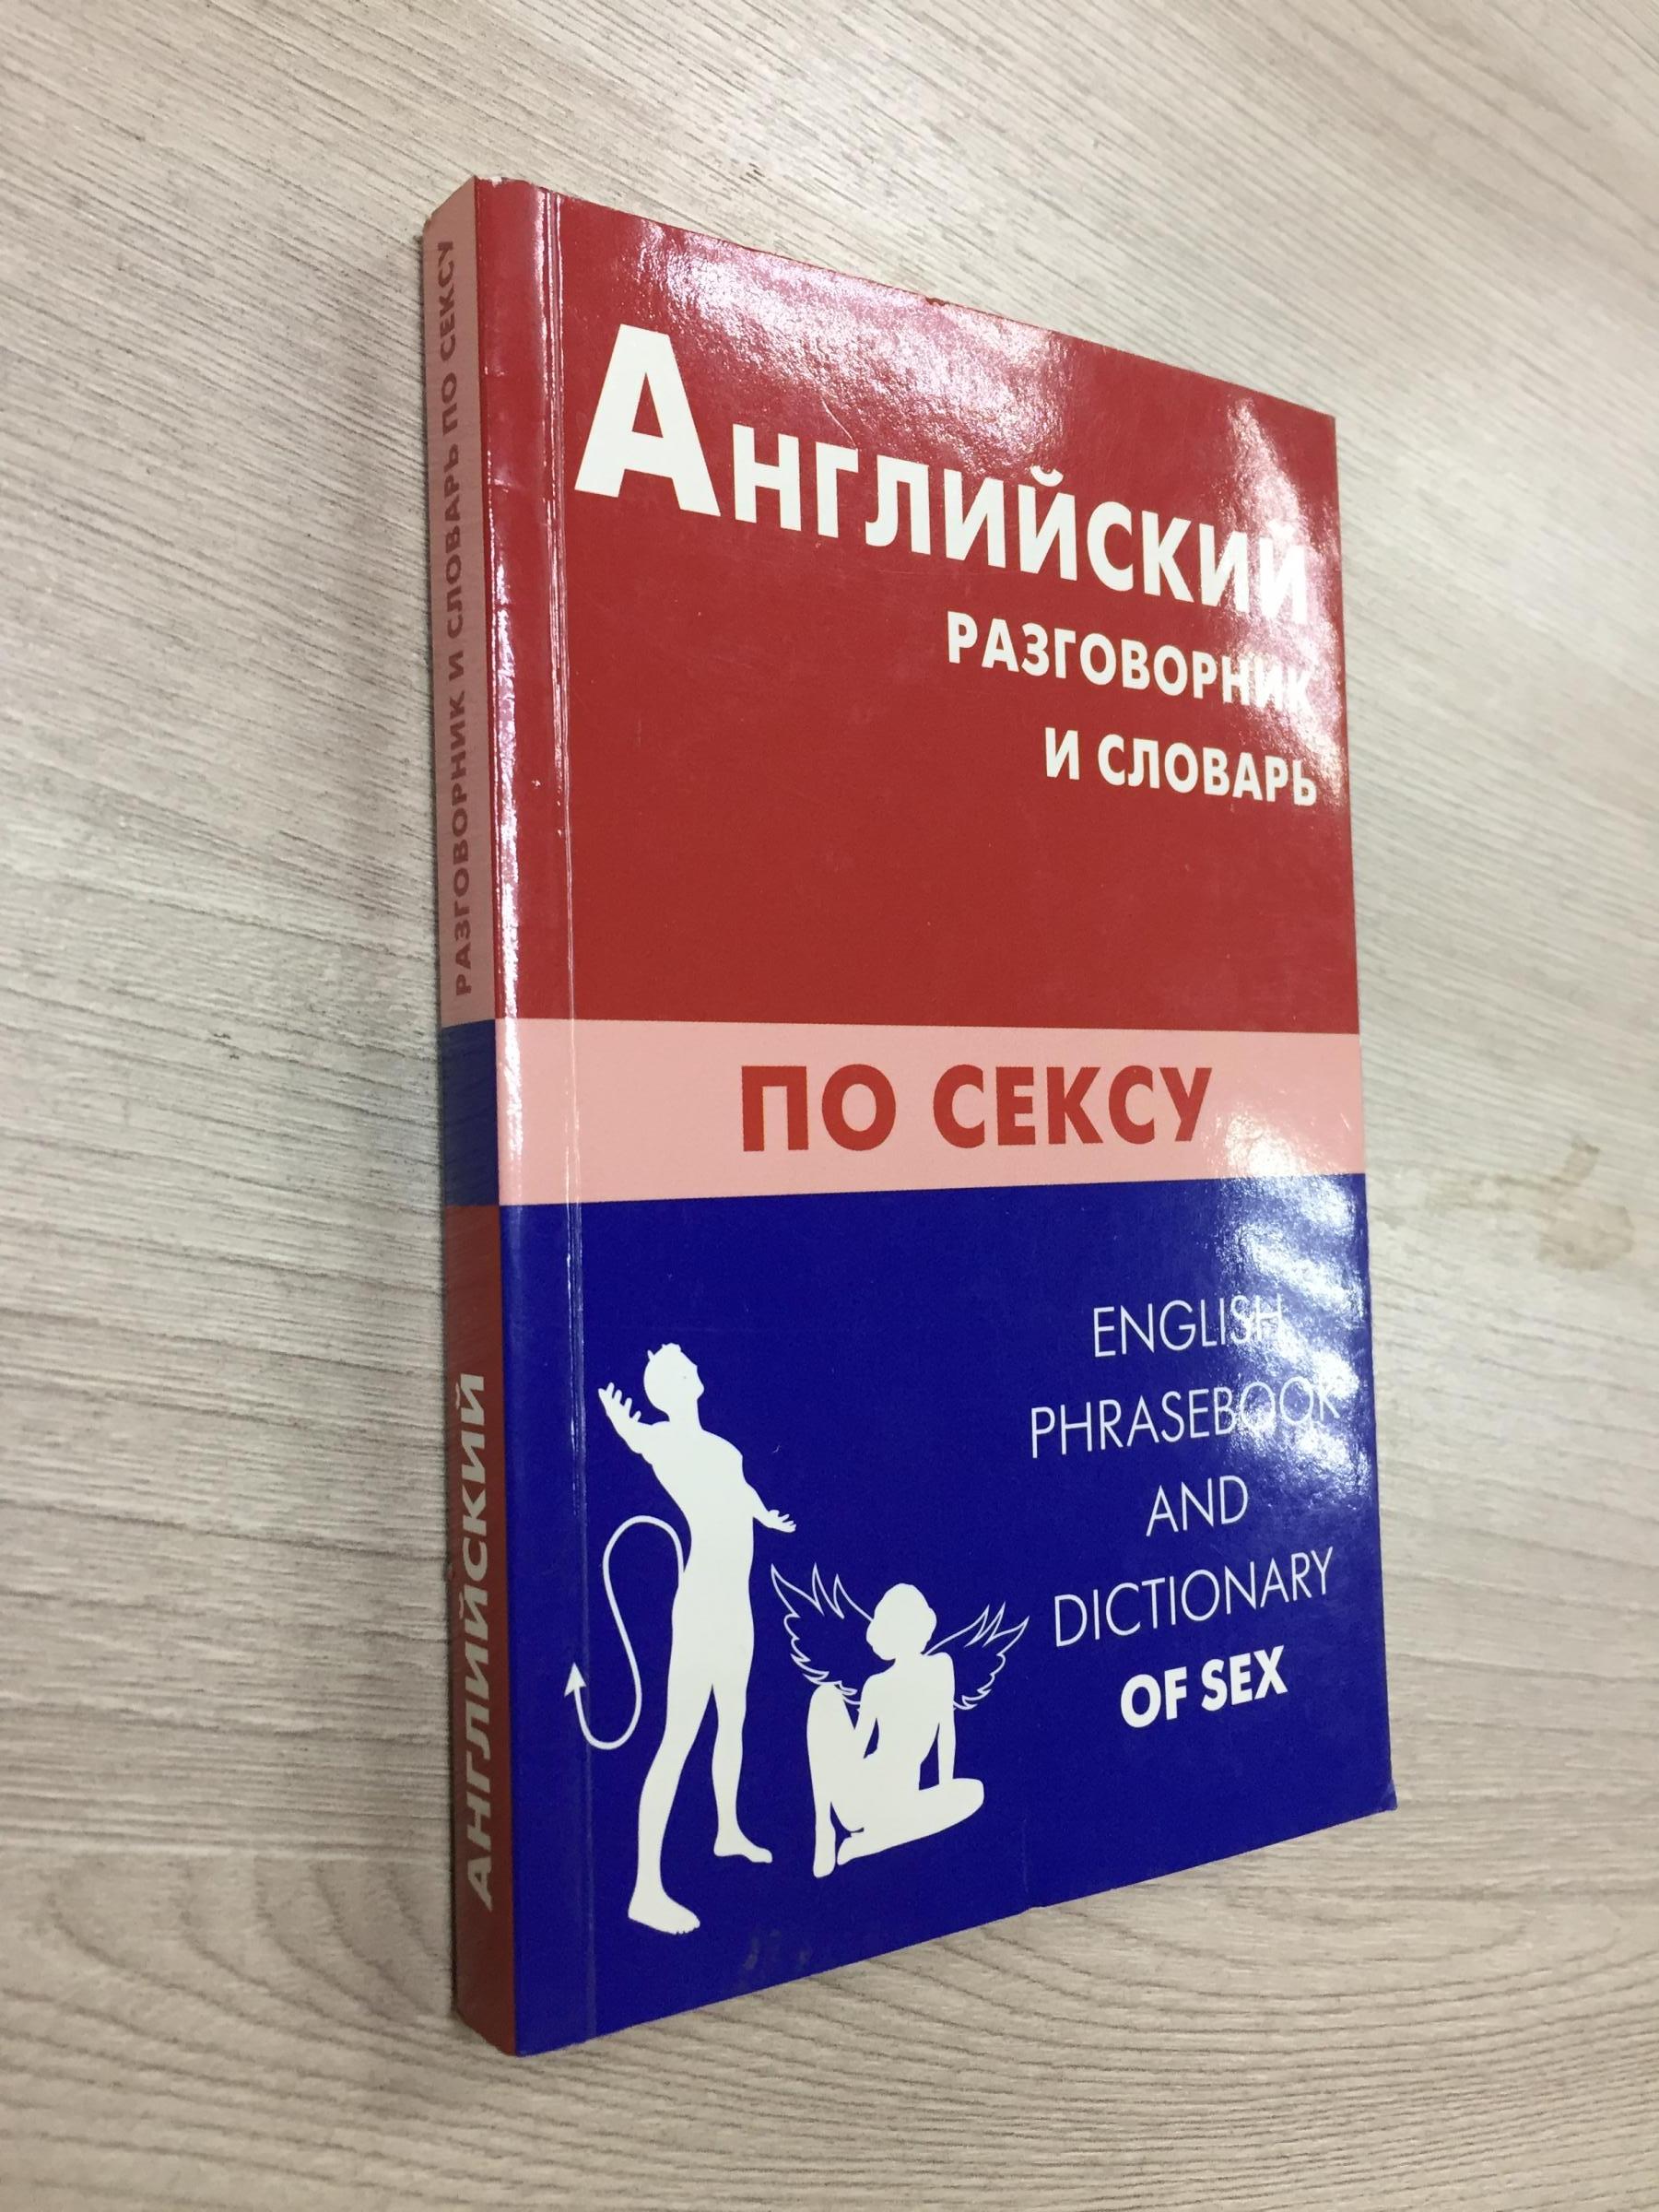 групповой секс перевод на английский, словарь русский - английский